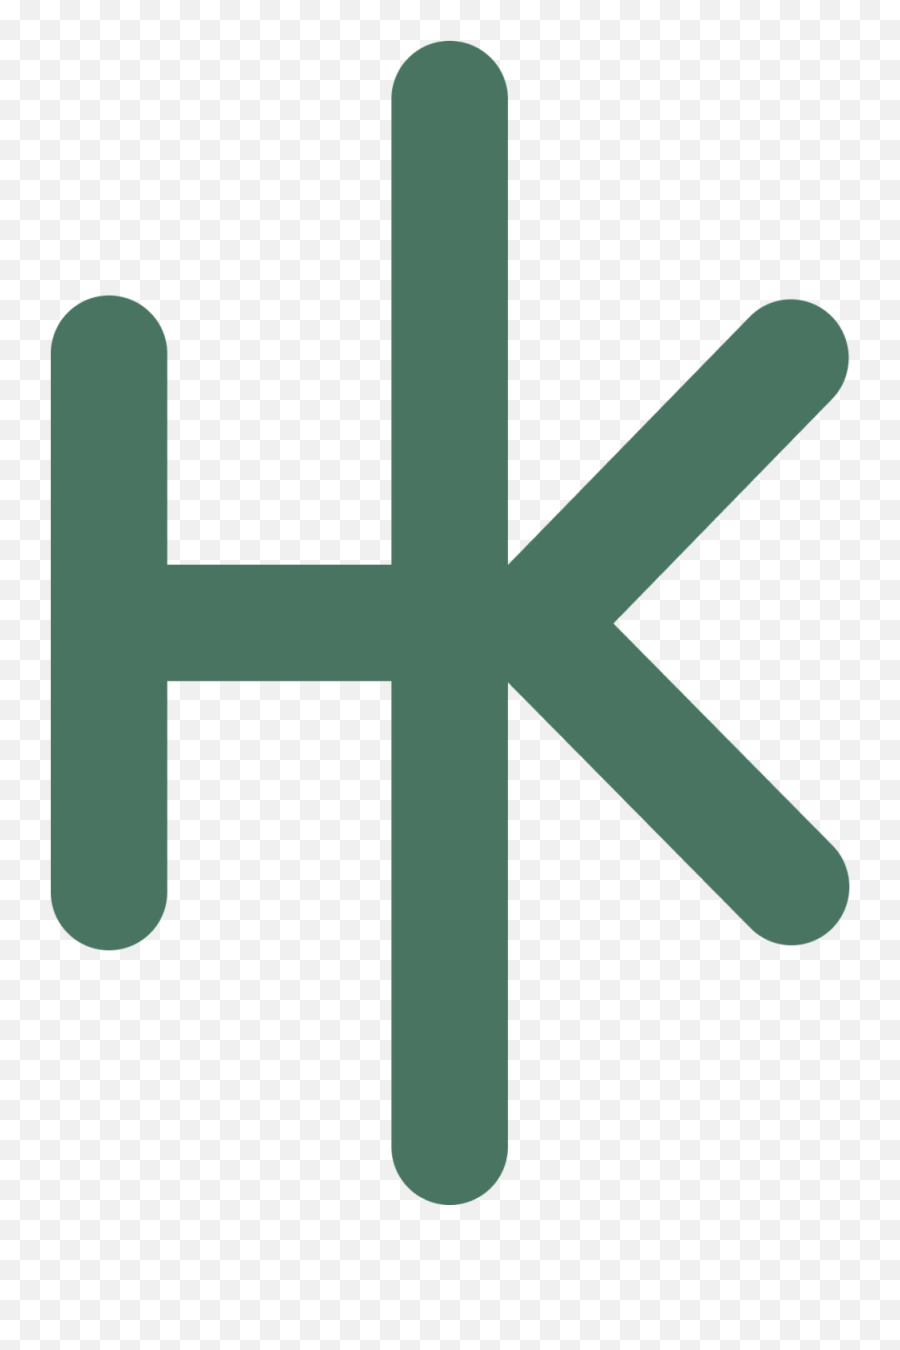 Sanuk Hanna Klein - Vertical Png,Sanuk Logos